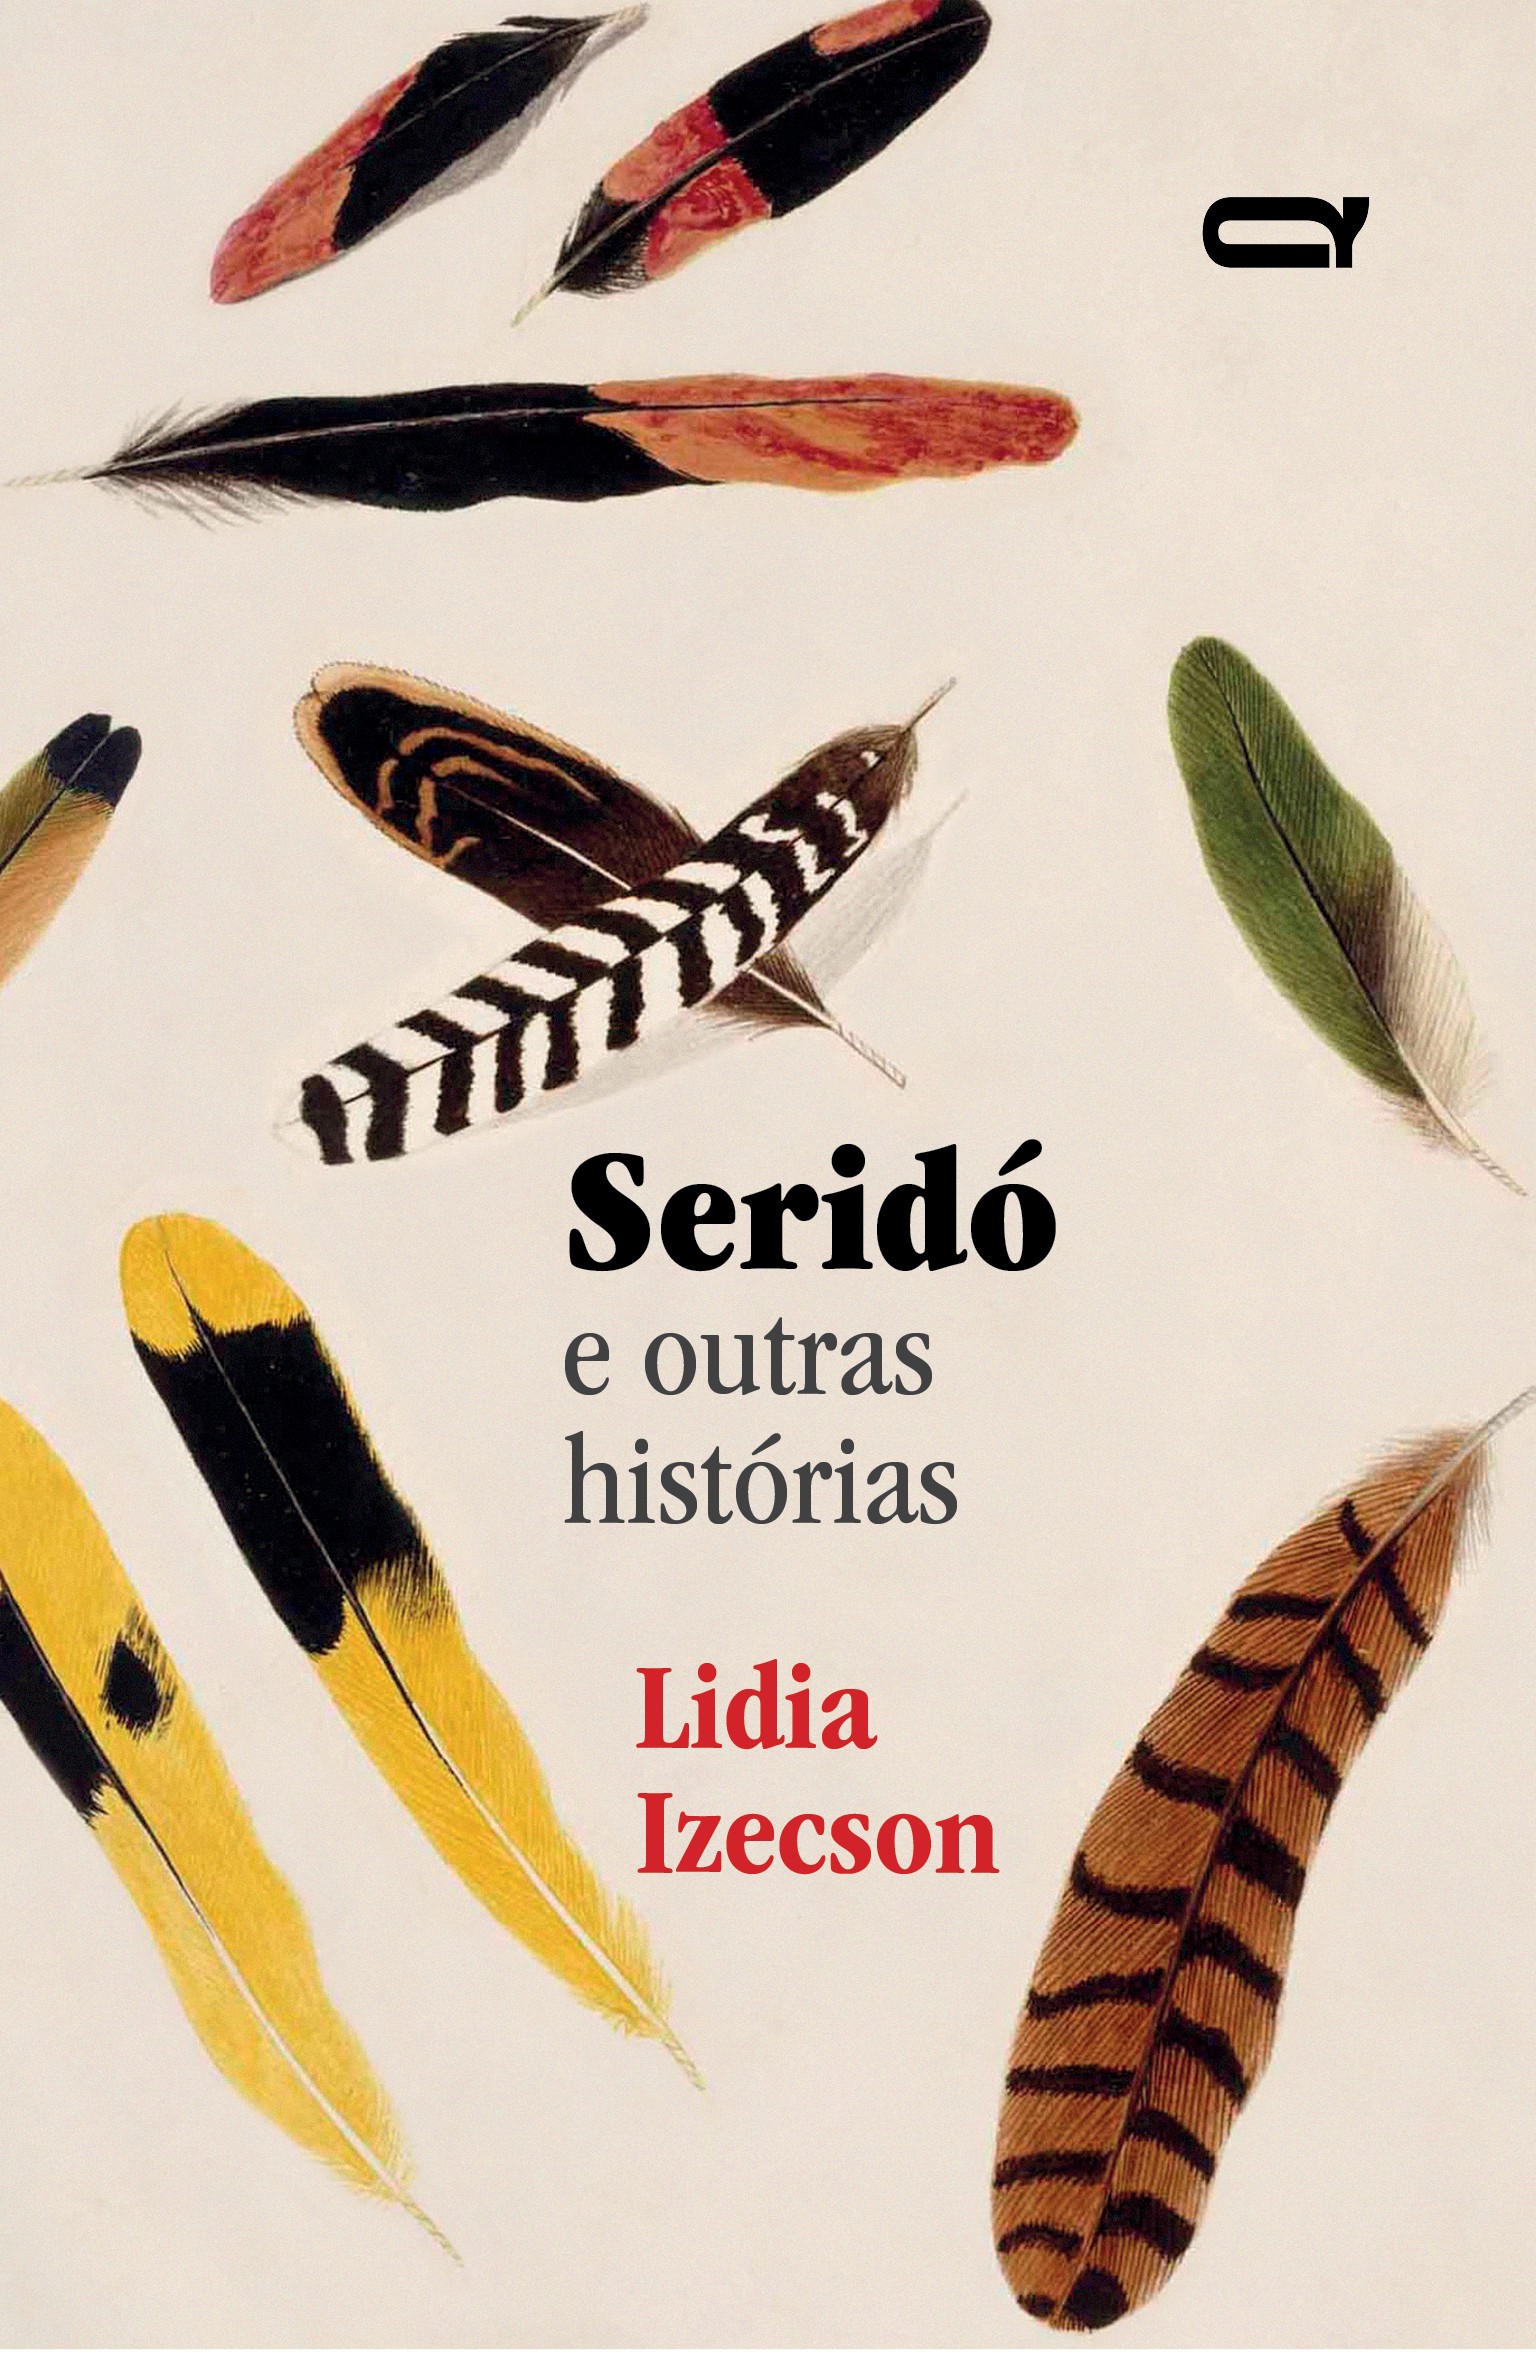 Capa do livro Seridó (Foto: Divulgação)